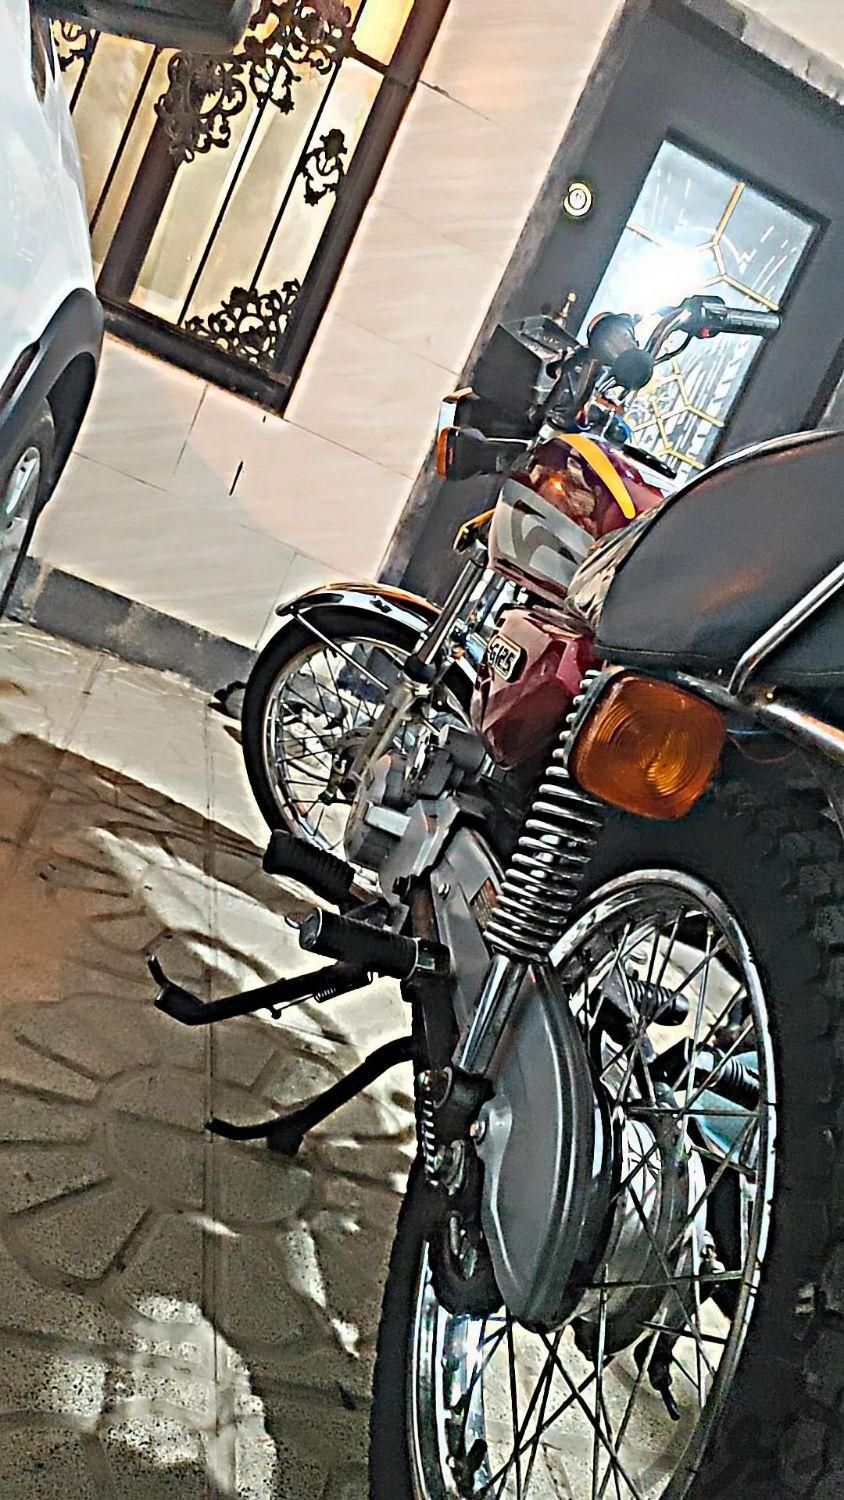 موتور مدل92|موتورسیکلت|مشهد, شهرک شهید رجایی|دیوار